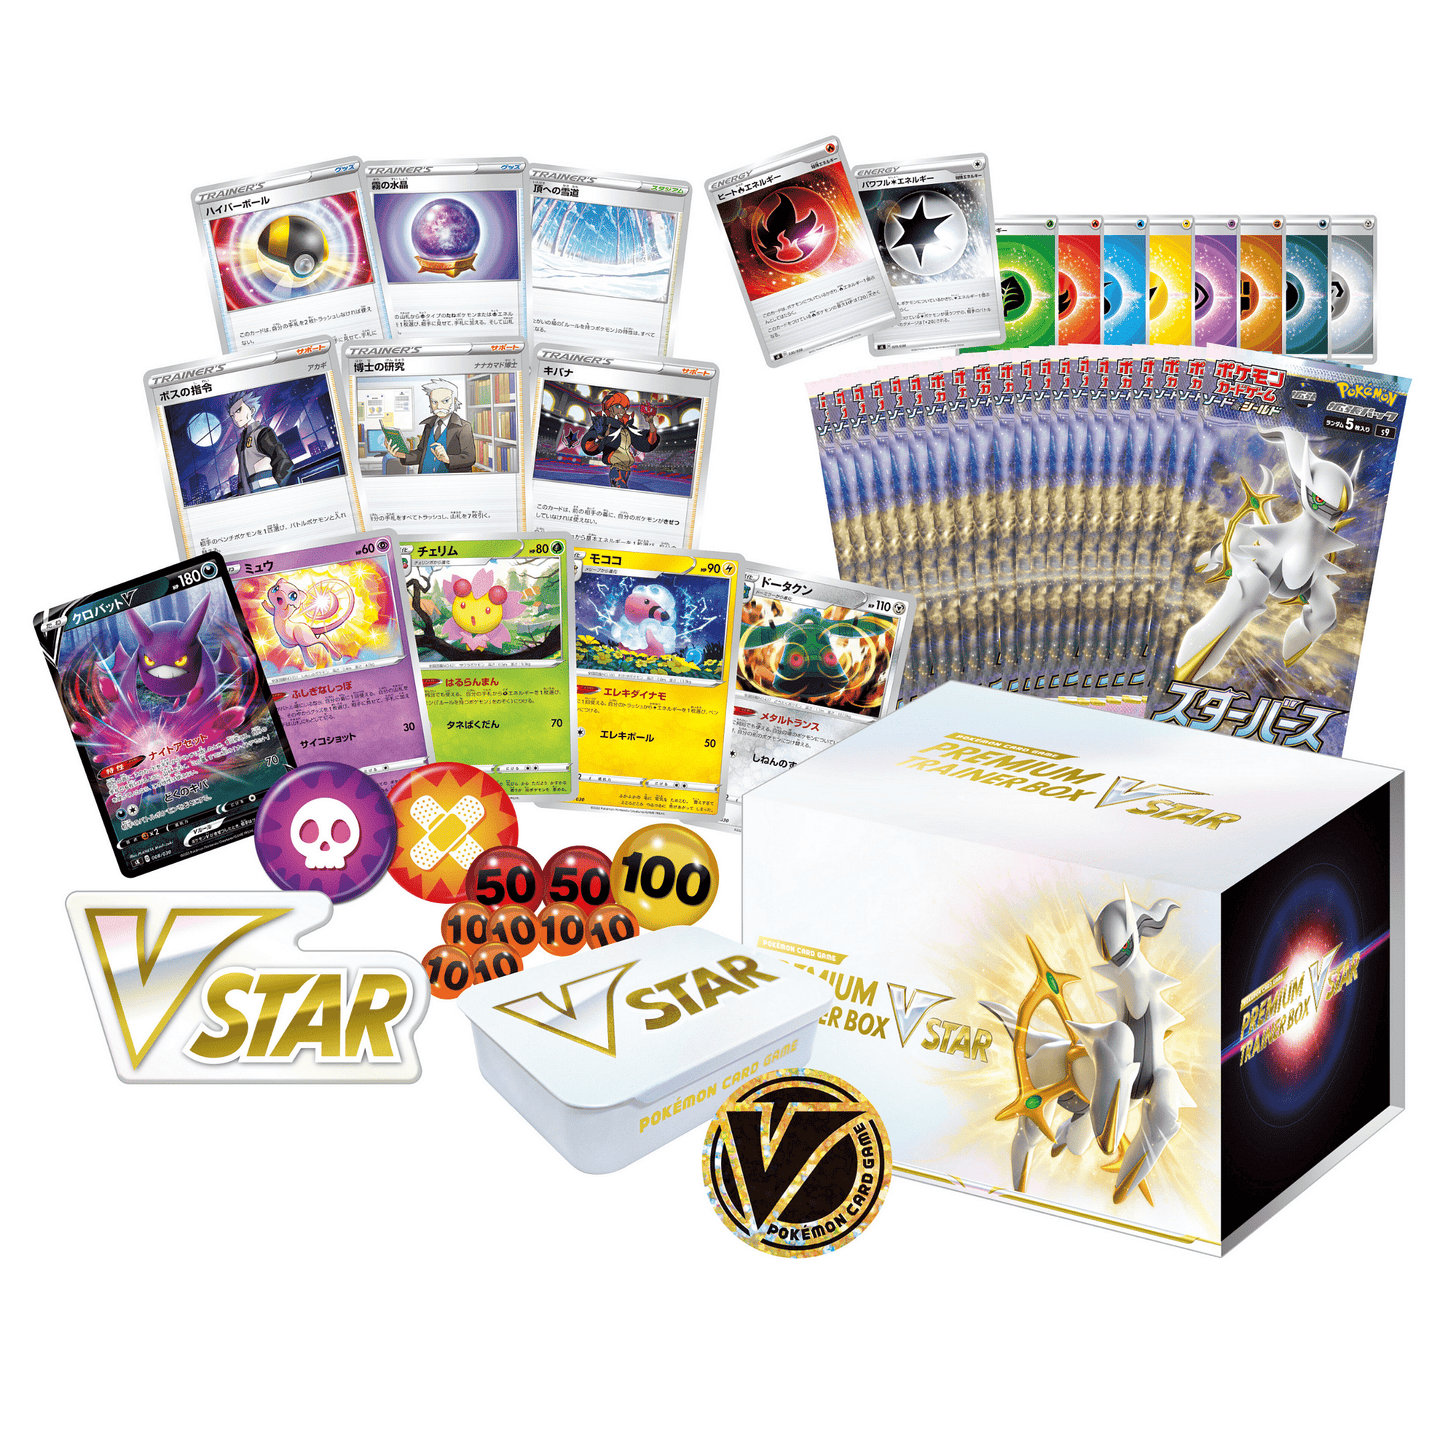 Vstar Premium Trainer Box | s9 | Pokemon ChitoroShop